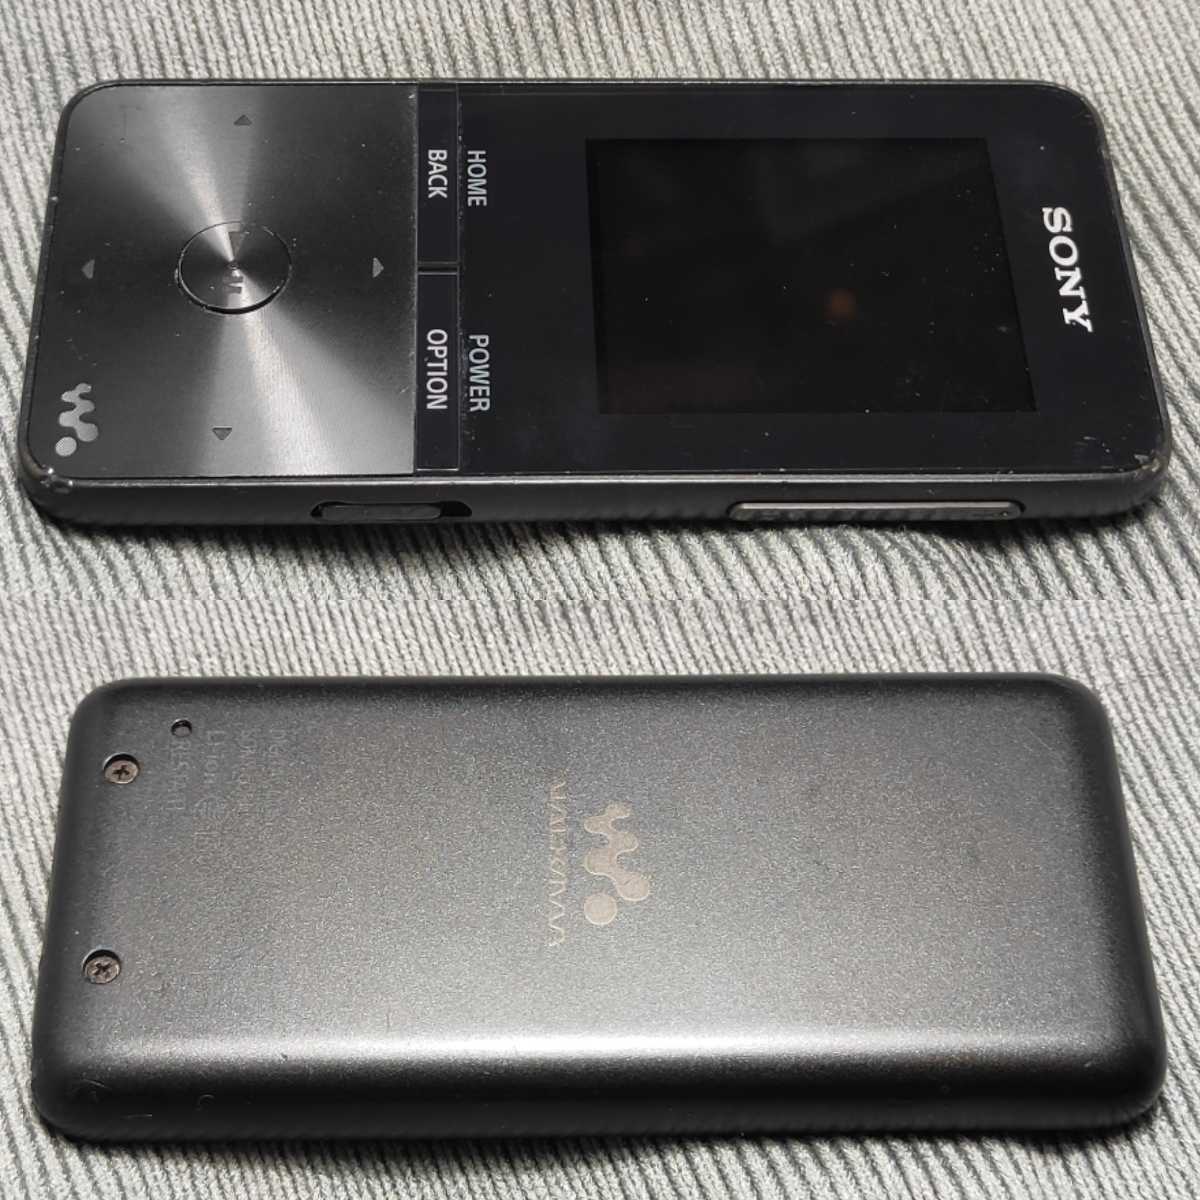 1001557【正常動作品】SONY NW-S313 WALKMAN 4GB ブラック Bluetooth ノイズキャンセリング 送料無料 黒 ソニー ウォークマン 純正USB_画像9